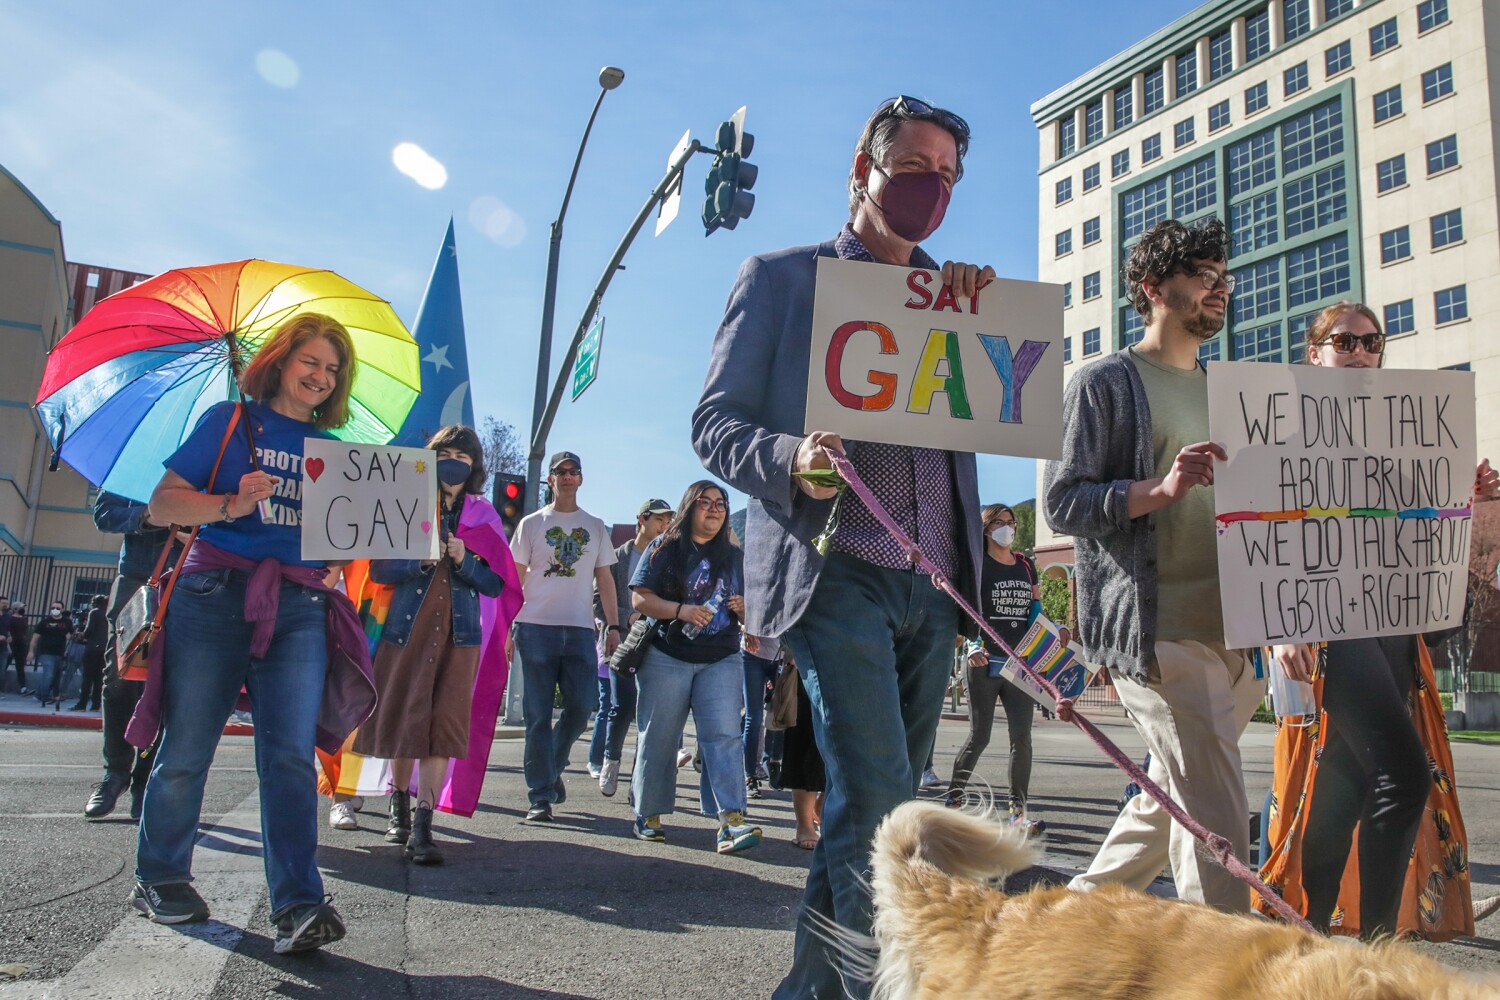 Anti-LGBTQ legislation in Texas, Florida worries L.A.